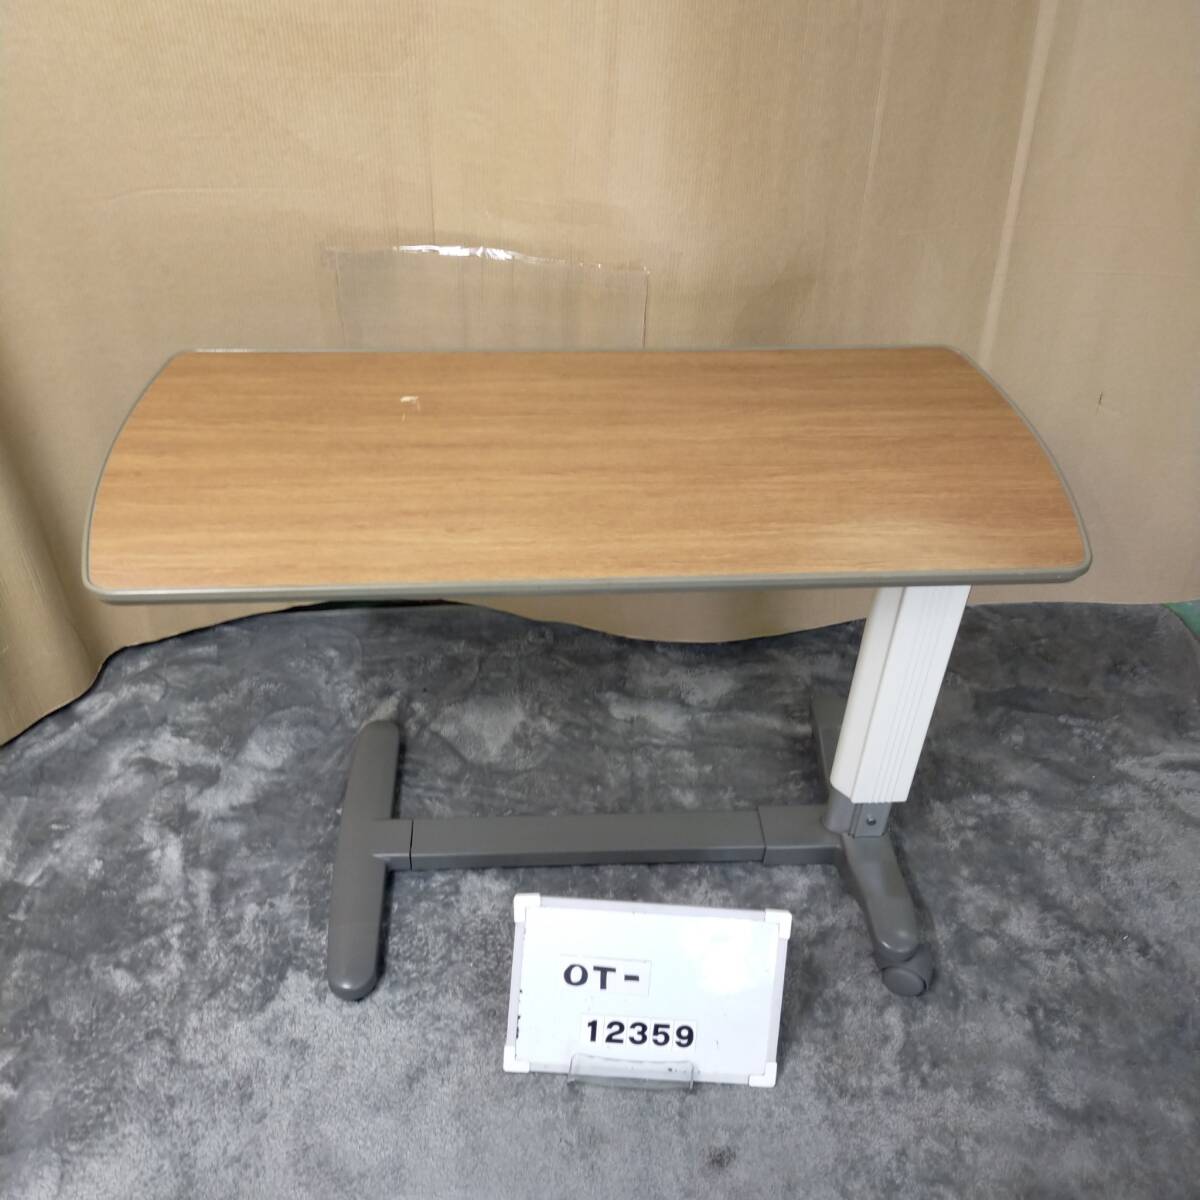 (OT-12359)[ б/у ]pala крепление прикроватный стол KF-193 дезинфекция мойка завершено товары для ухода 